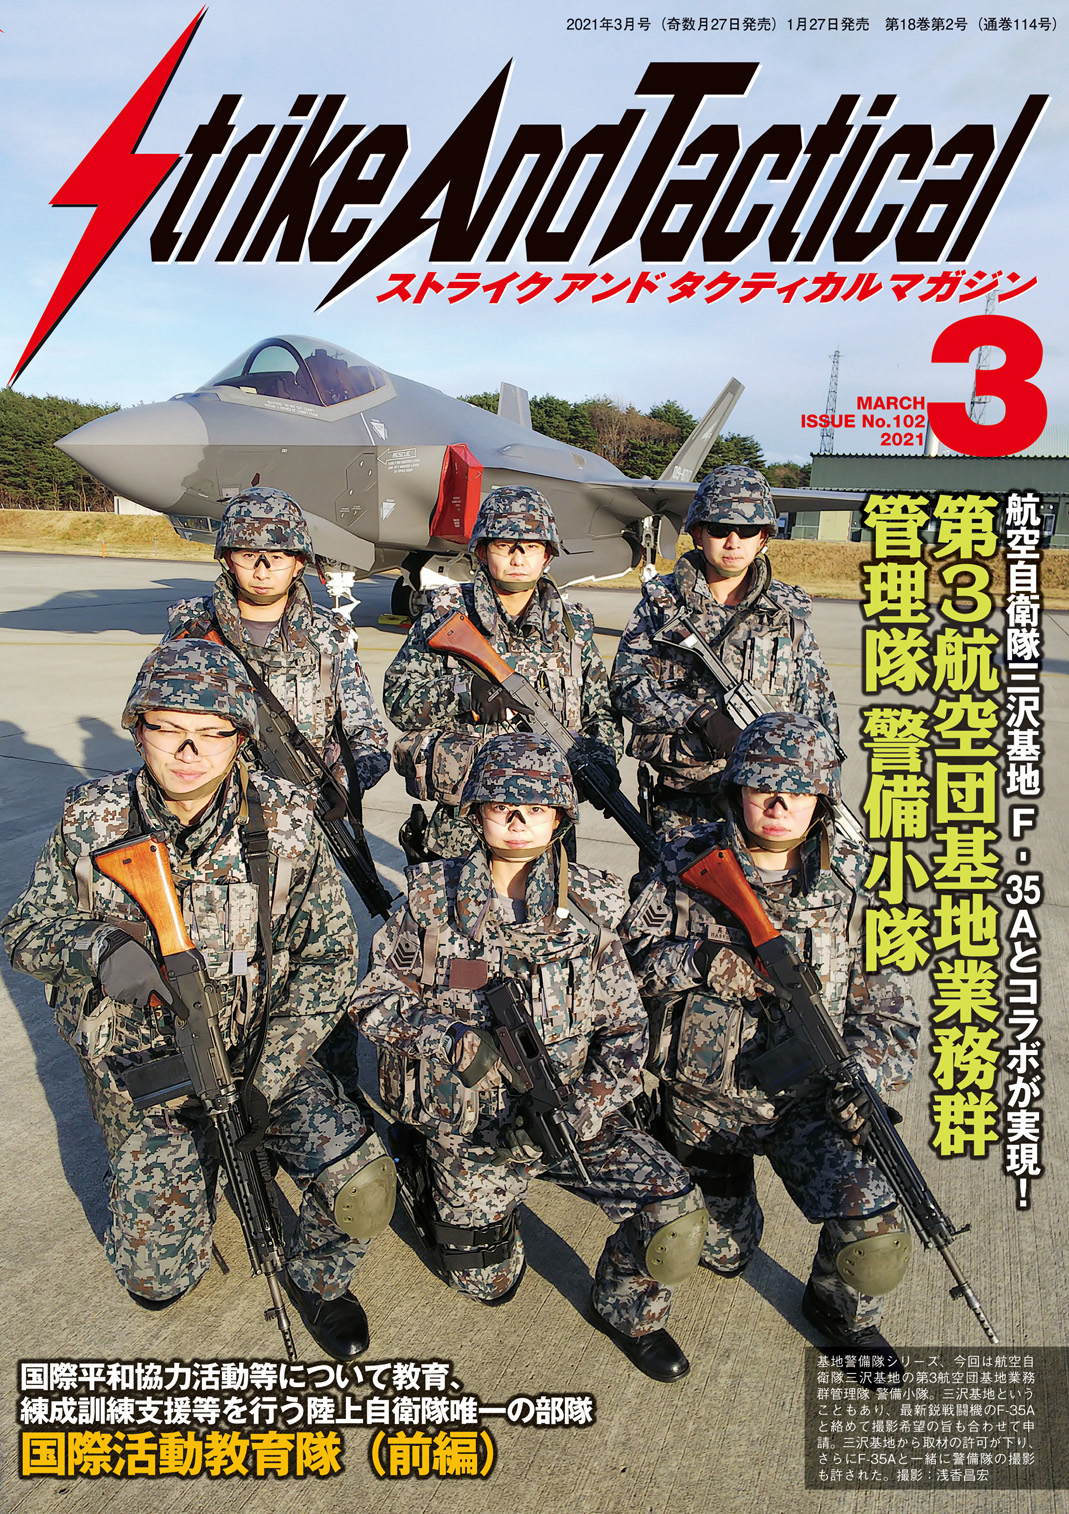 航空自衛隊三沢基地 第3航空団基地業務群管理隊 警備小隊 